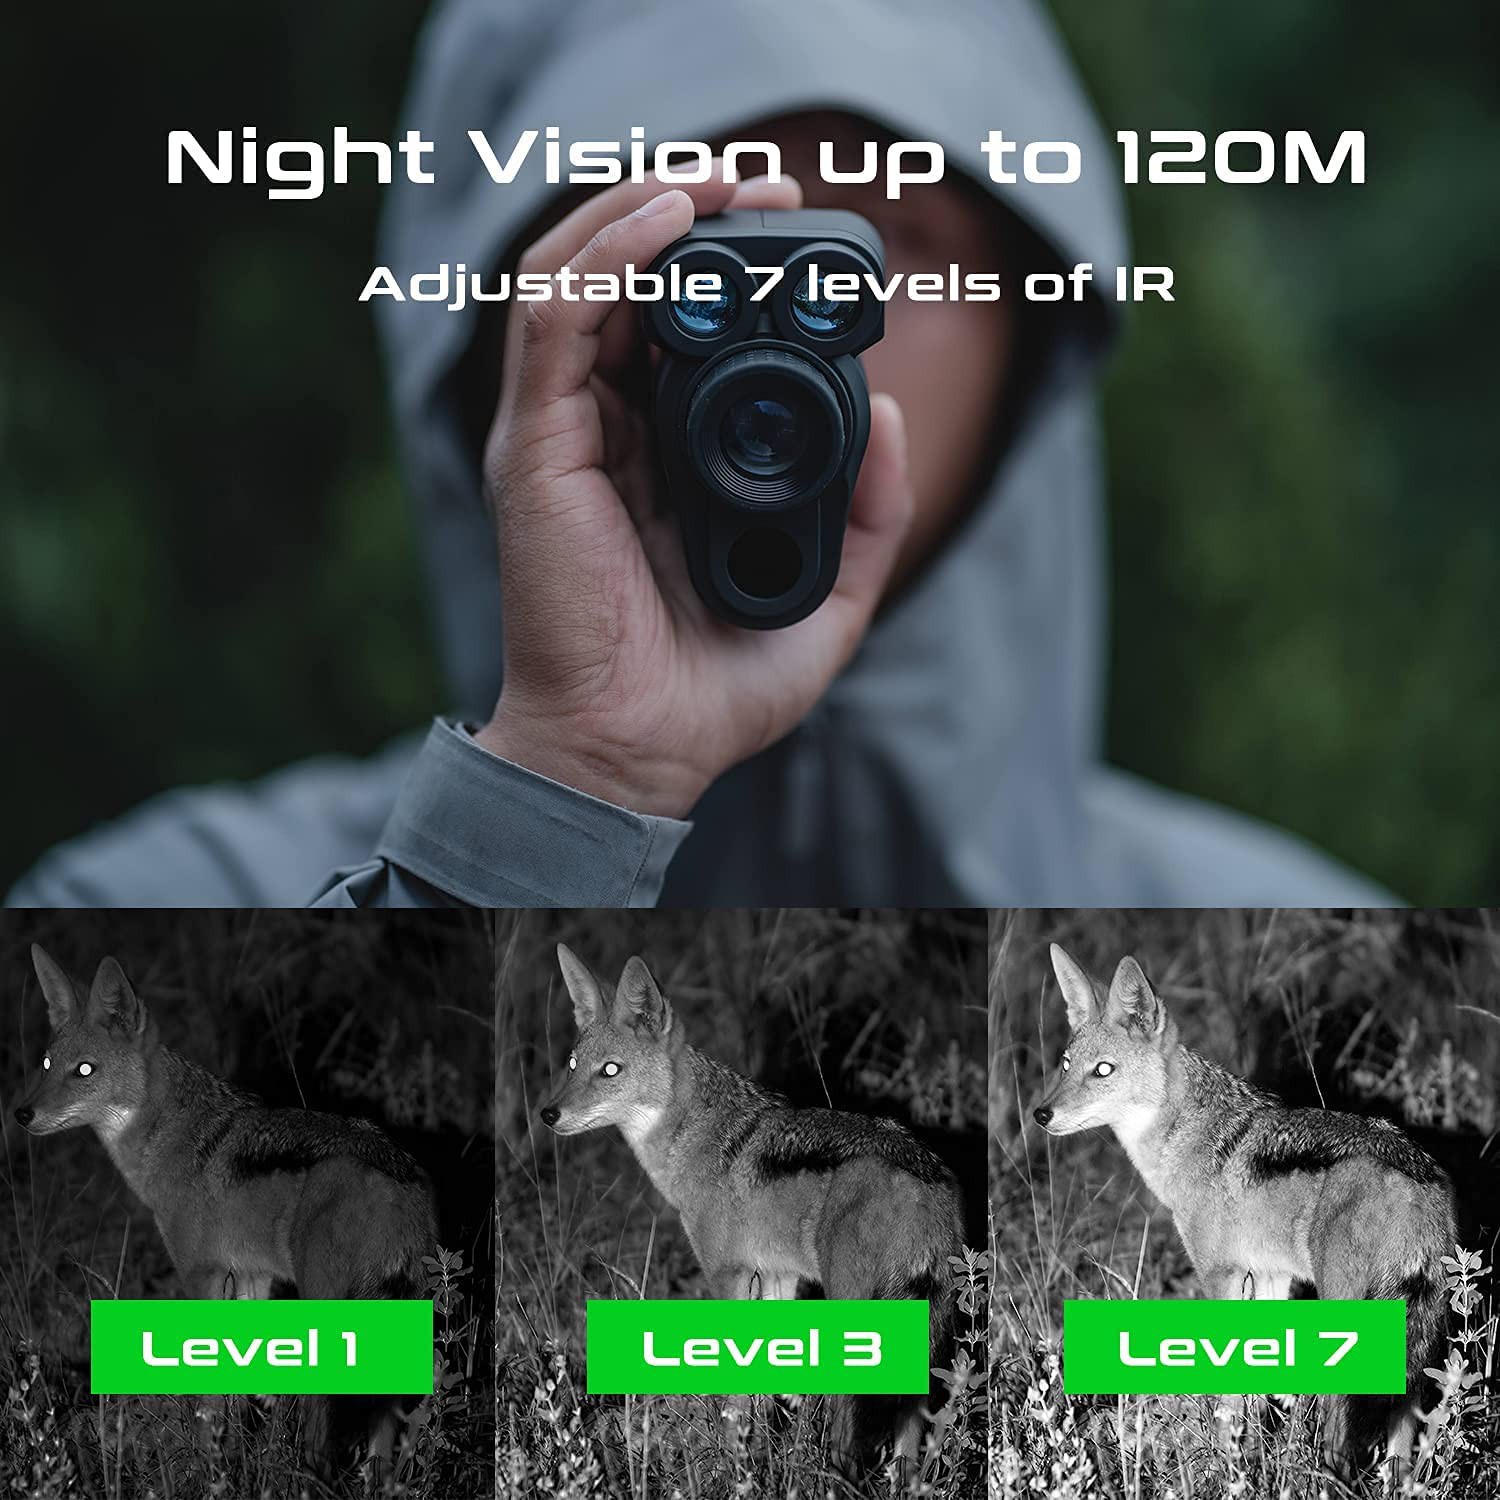 חד-קולרי עם ראיית לילה עד 120 מטר בלילה